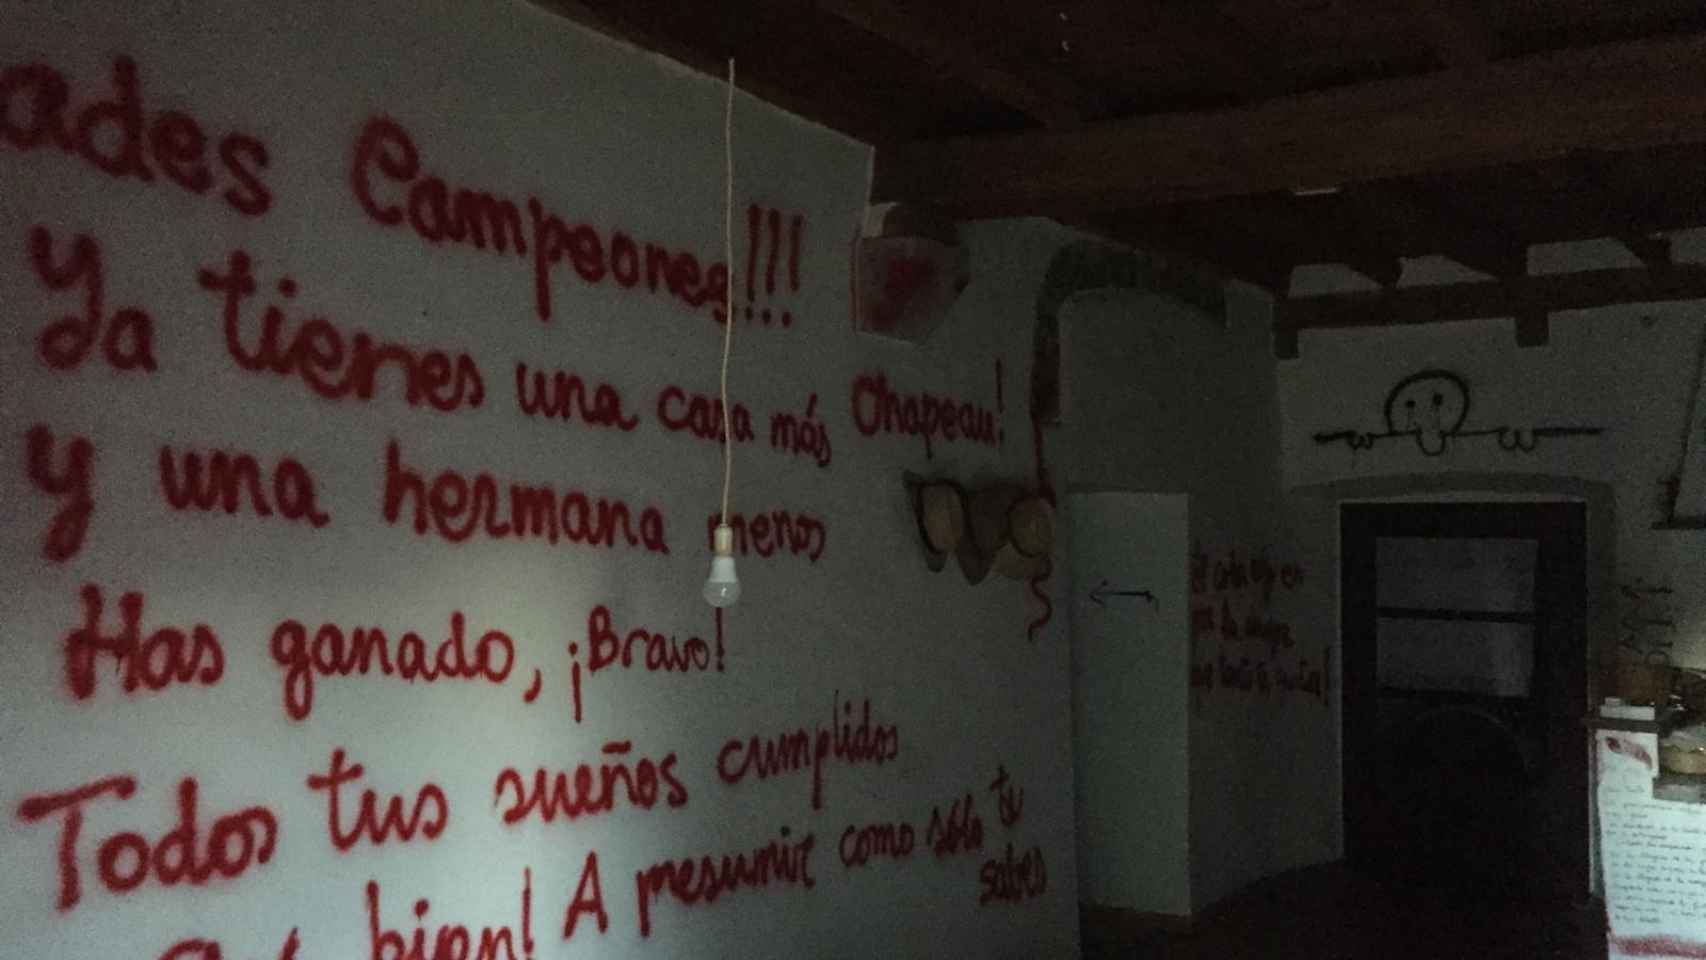 Conxita escribió mensajes en la pared antes de suicidarse